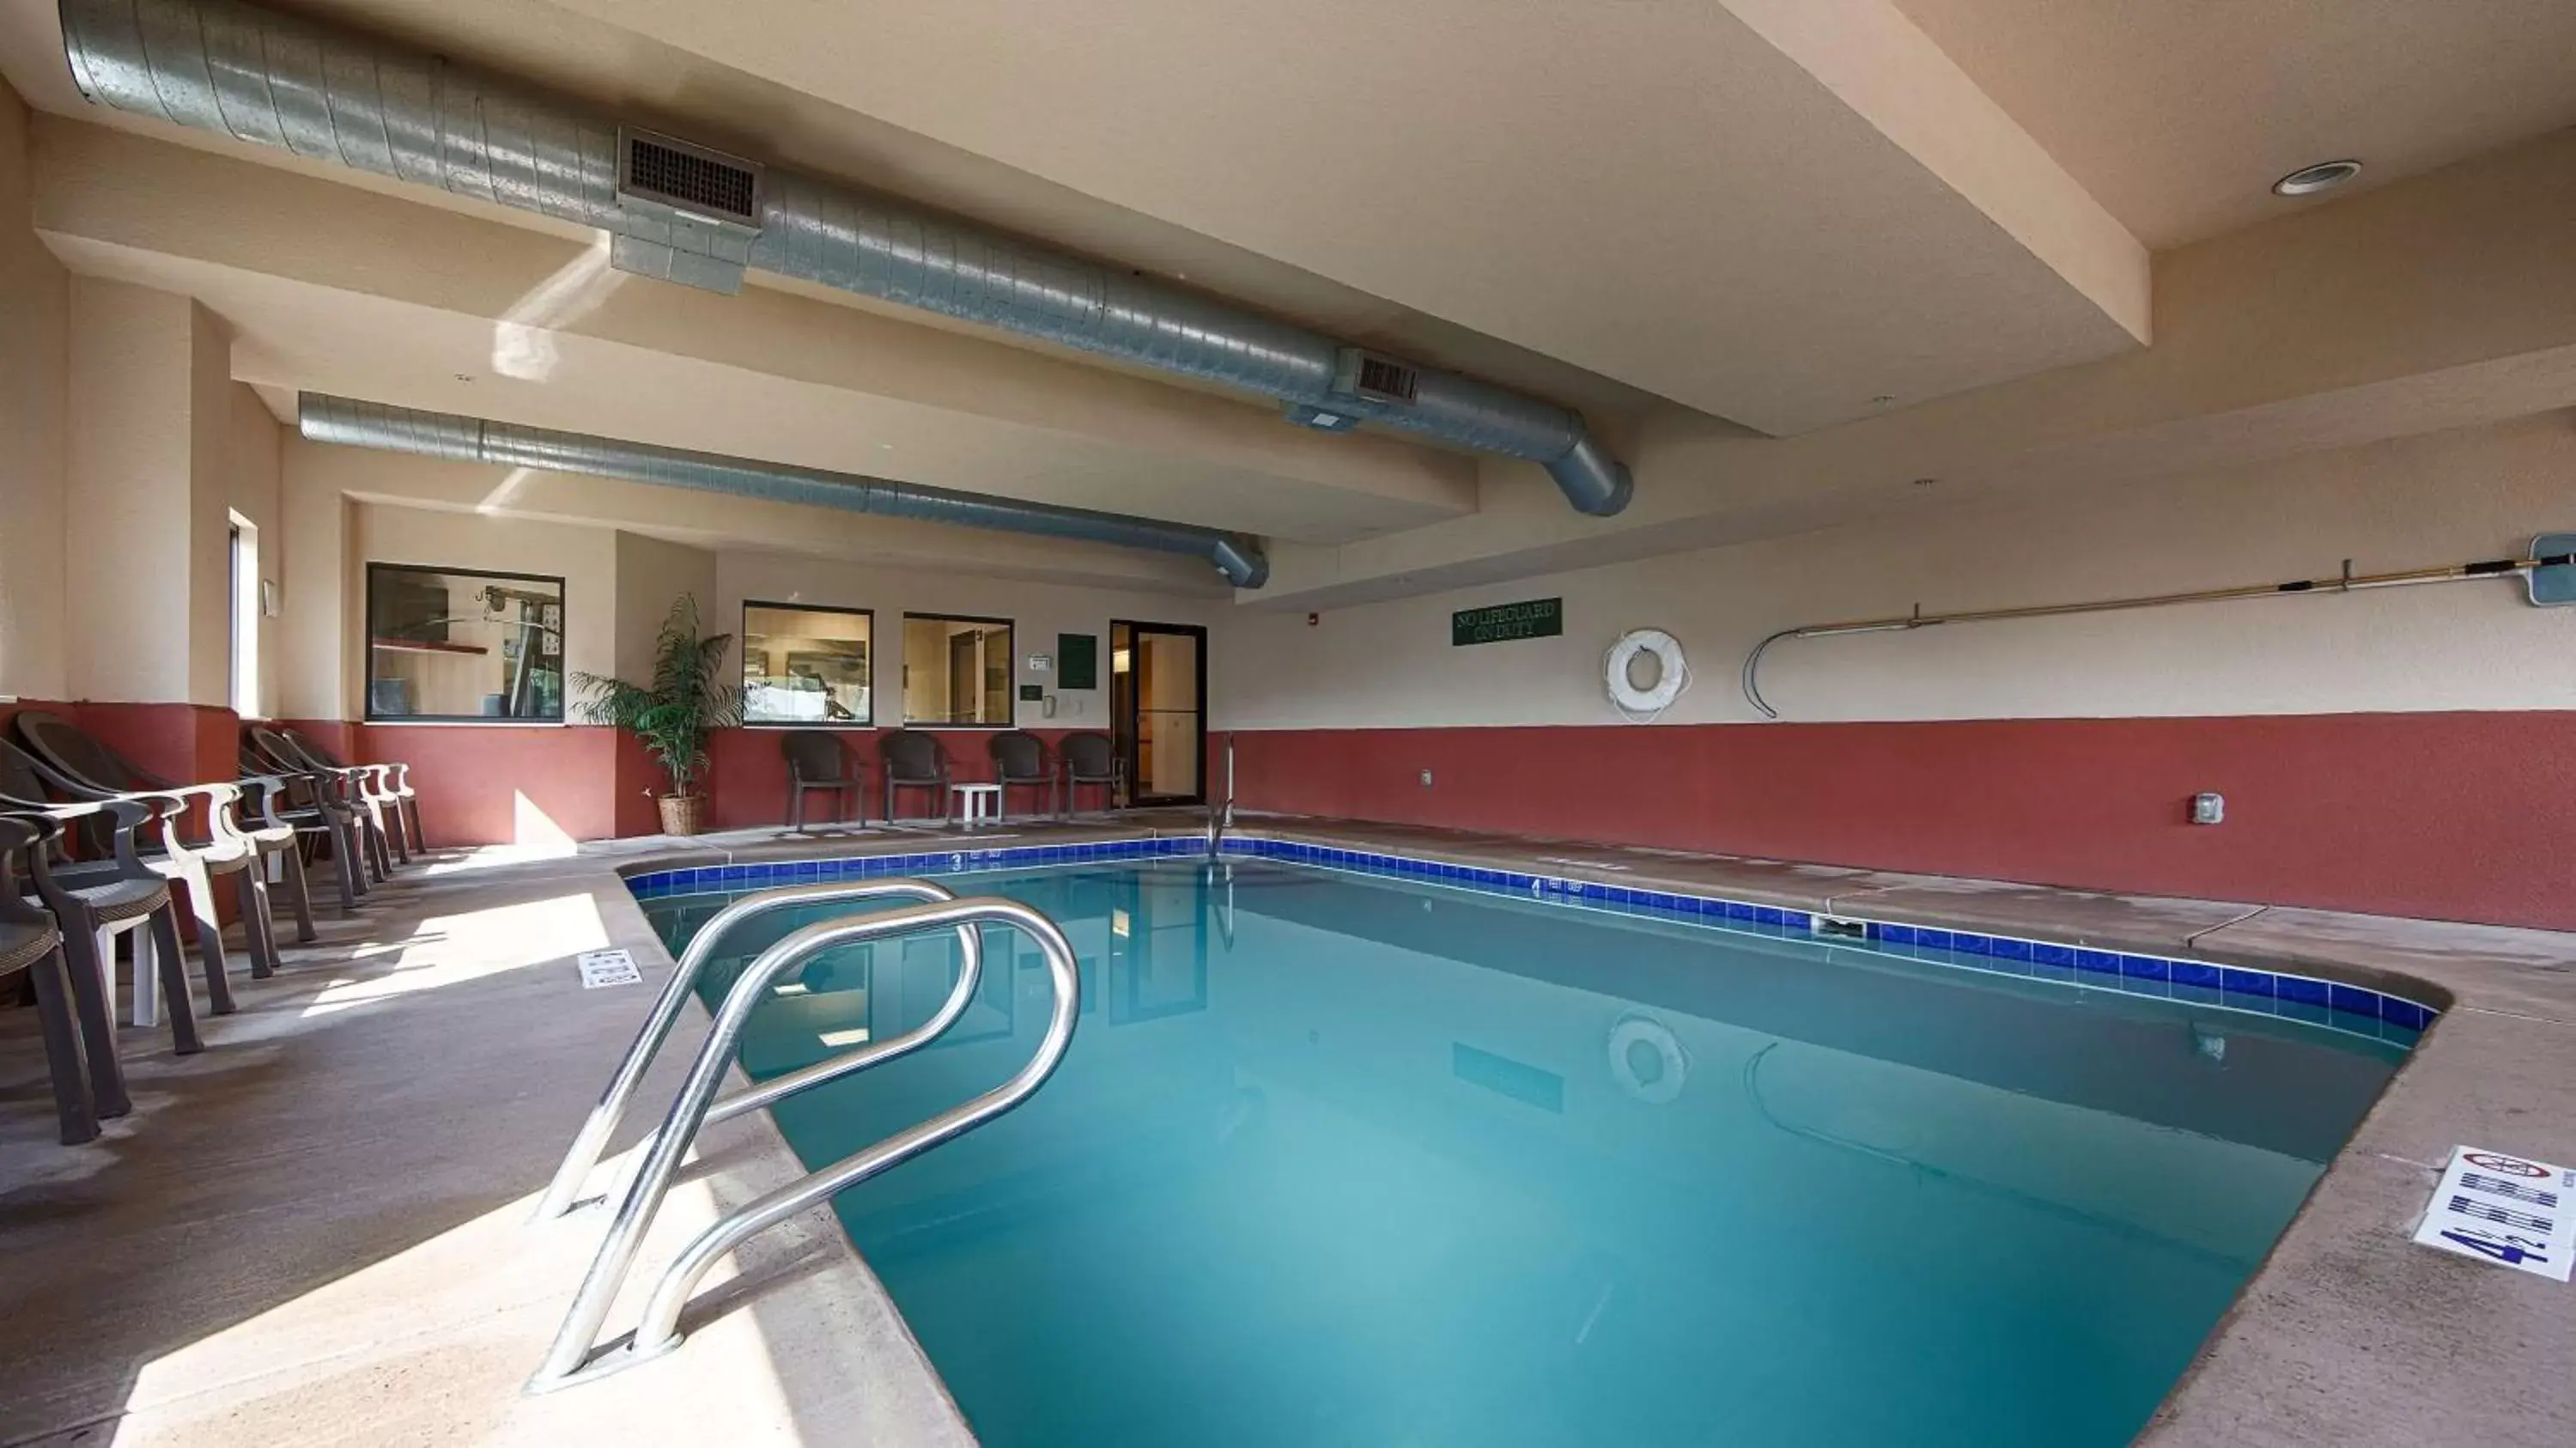 On site, Swimming Pool in Best Western Danville Inn